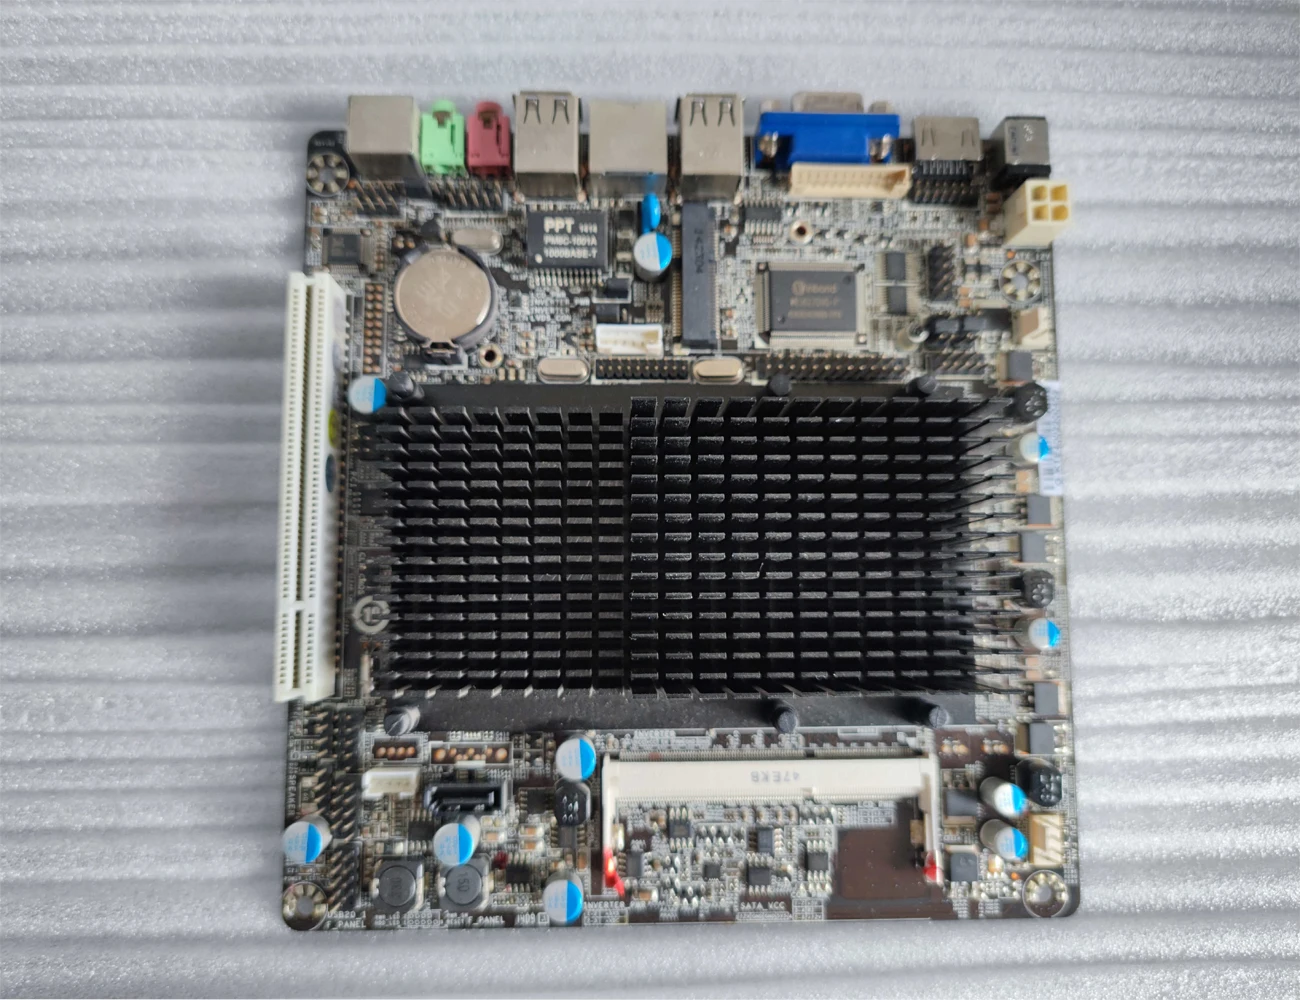 D2550 Двухъядерная четырехпоточная маломощная материнская плата MINI-ITX 17X17 COM-порт H-D-M-I PCI Источник питания постоянного тока